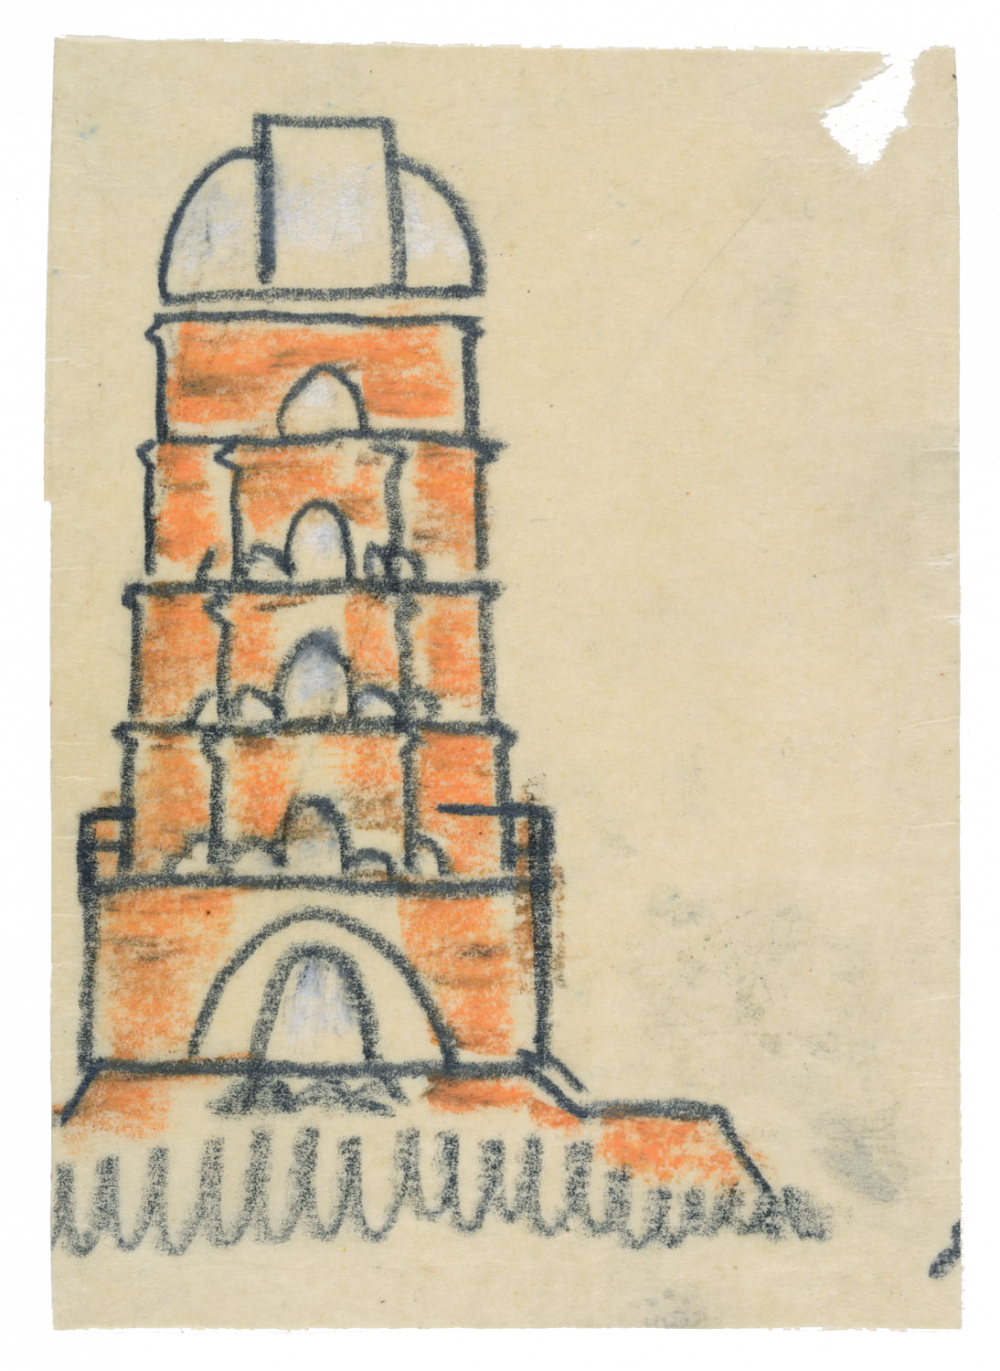 Potsdam, Einsteinturm, Variante Zeichnung (Graphit, roter Farbstift, weiß gehöht, auf Transparentpapier)